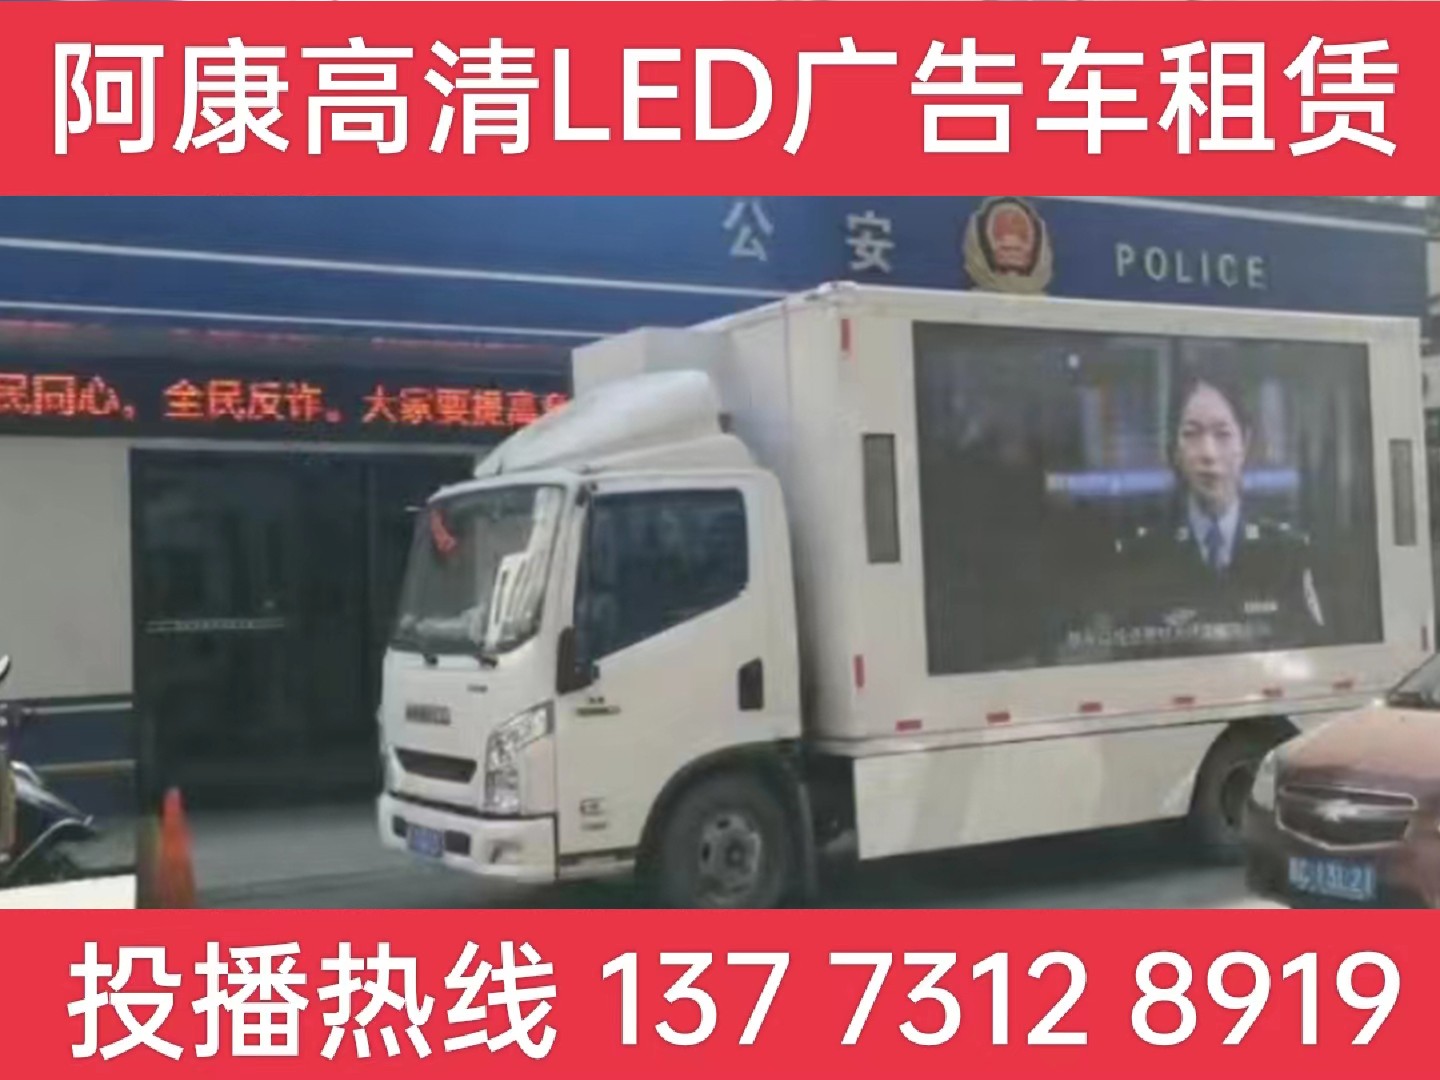 溧阳LED广告车租赁-反诈宣传